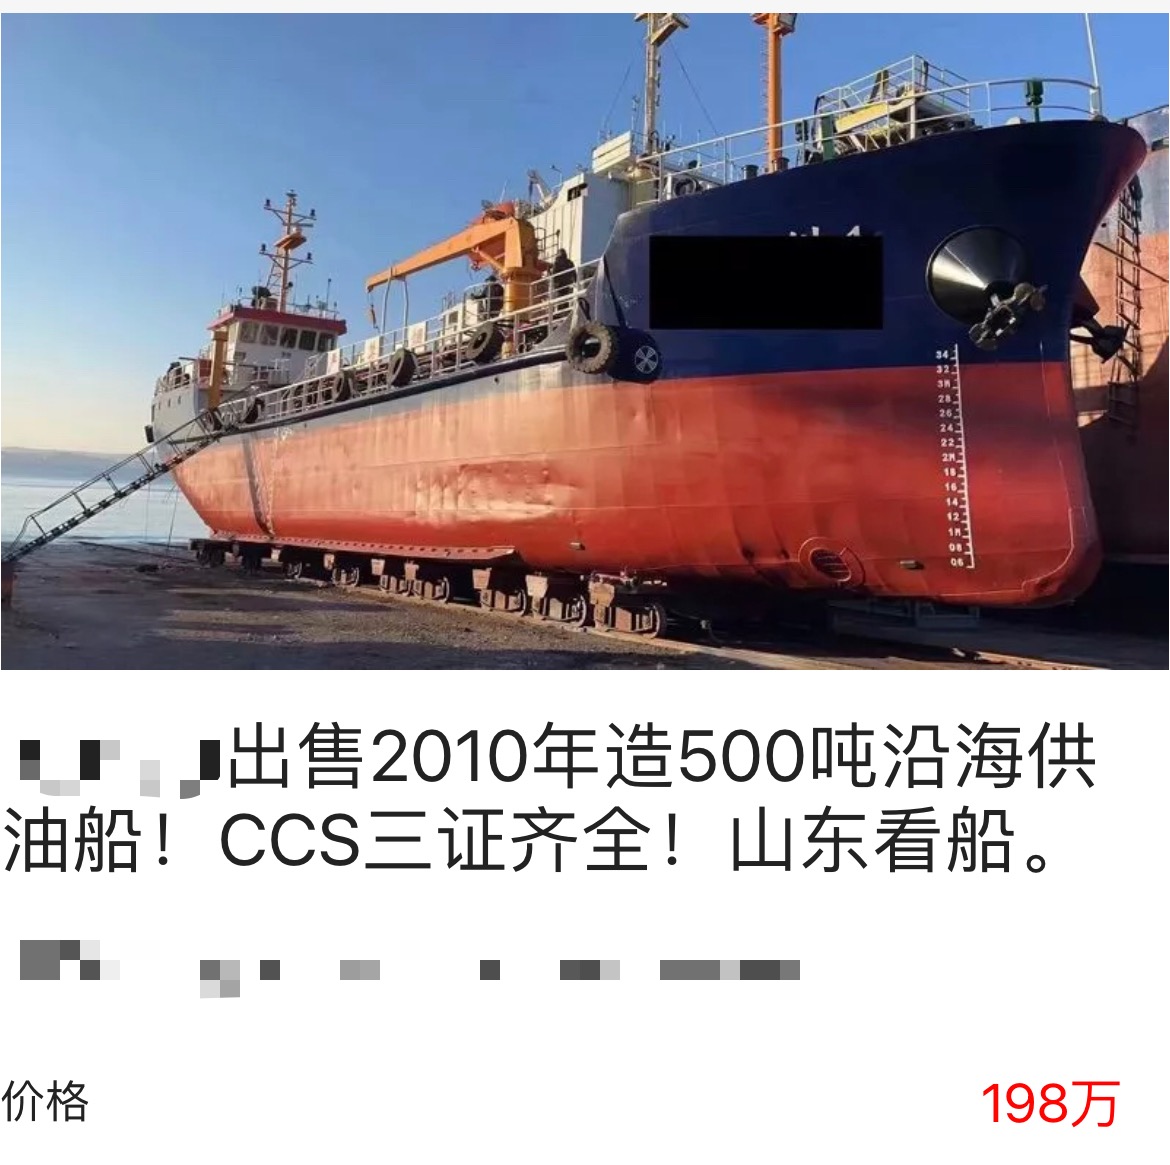 出售500吨油船cCS